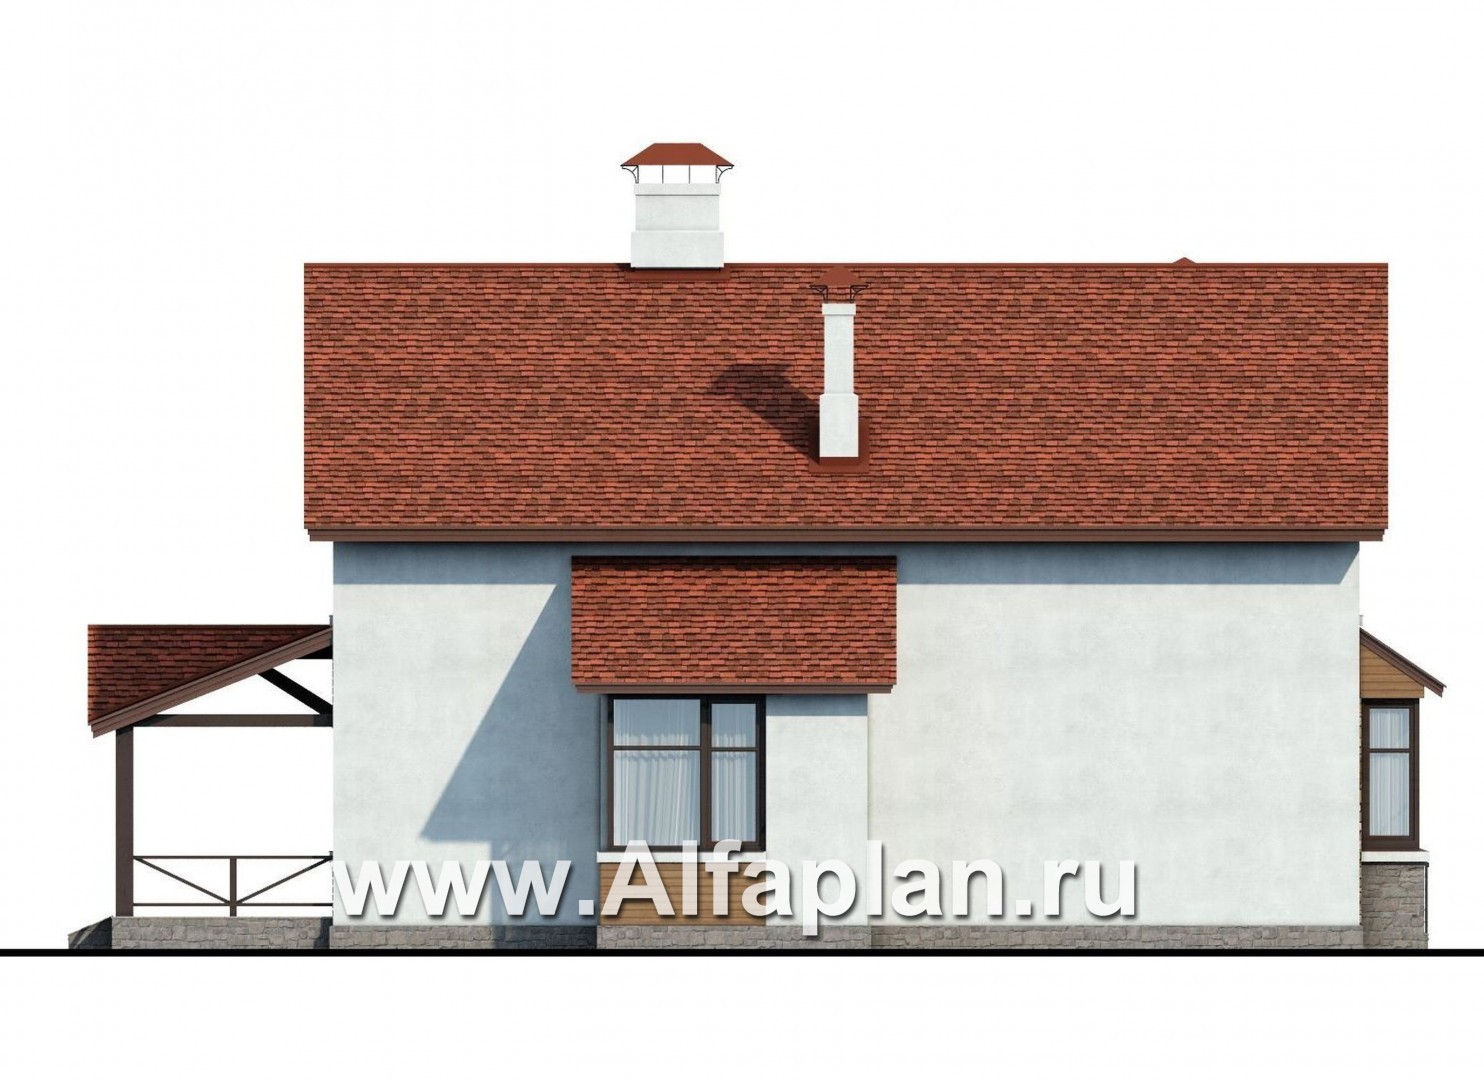 Проекты домов Альфаплан - «Новое время» - кирпичный коттедж для семьи с двумя детьми - изображение фасада №3